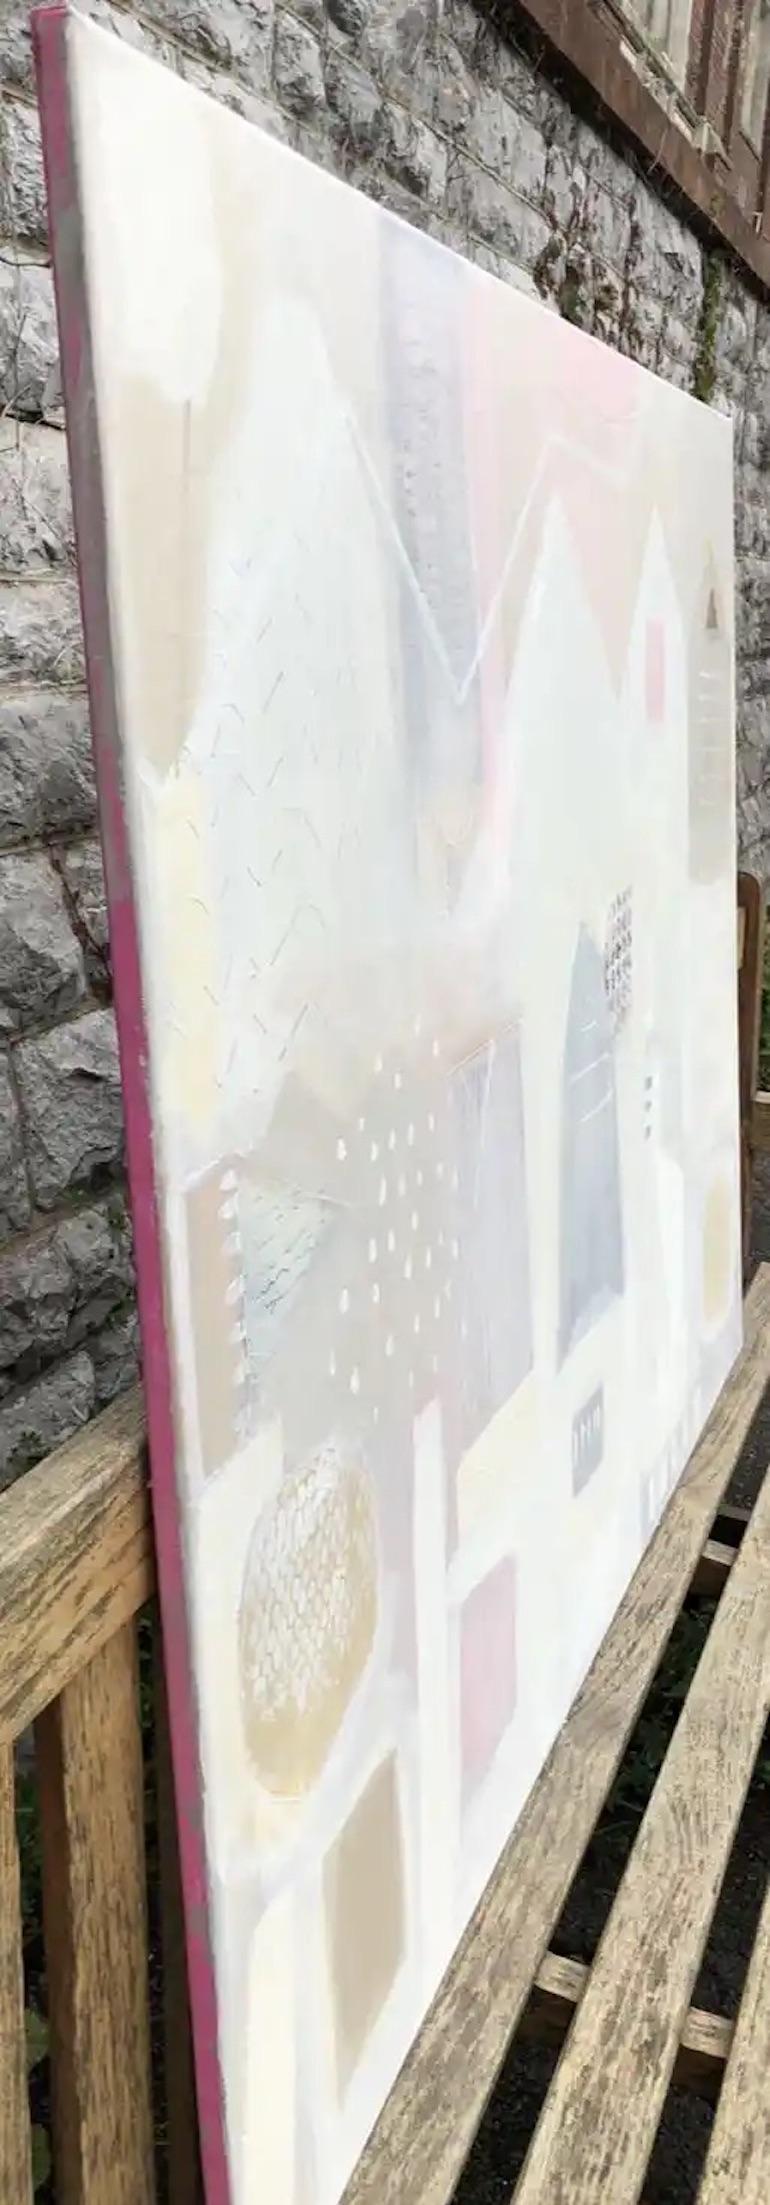 Façades de Bryggen 
par Maggie LaPorte-Banks
Peinture originale
Acrylique, collage, peinture dorée sur toile
Taille de l'image : 90 H x 122 L x 5 P cm (35.43 x 48.03 x 1.97 in)
Dimensions complètes de l'œuvre non encadrée : 90 H x 122 L x 5 P cm